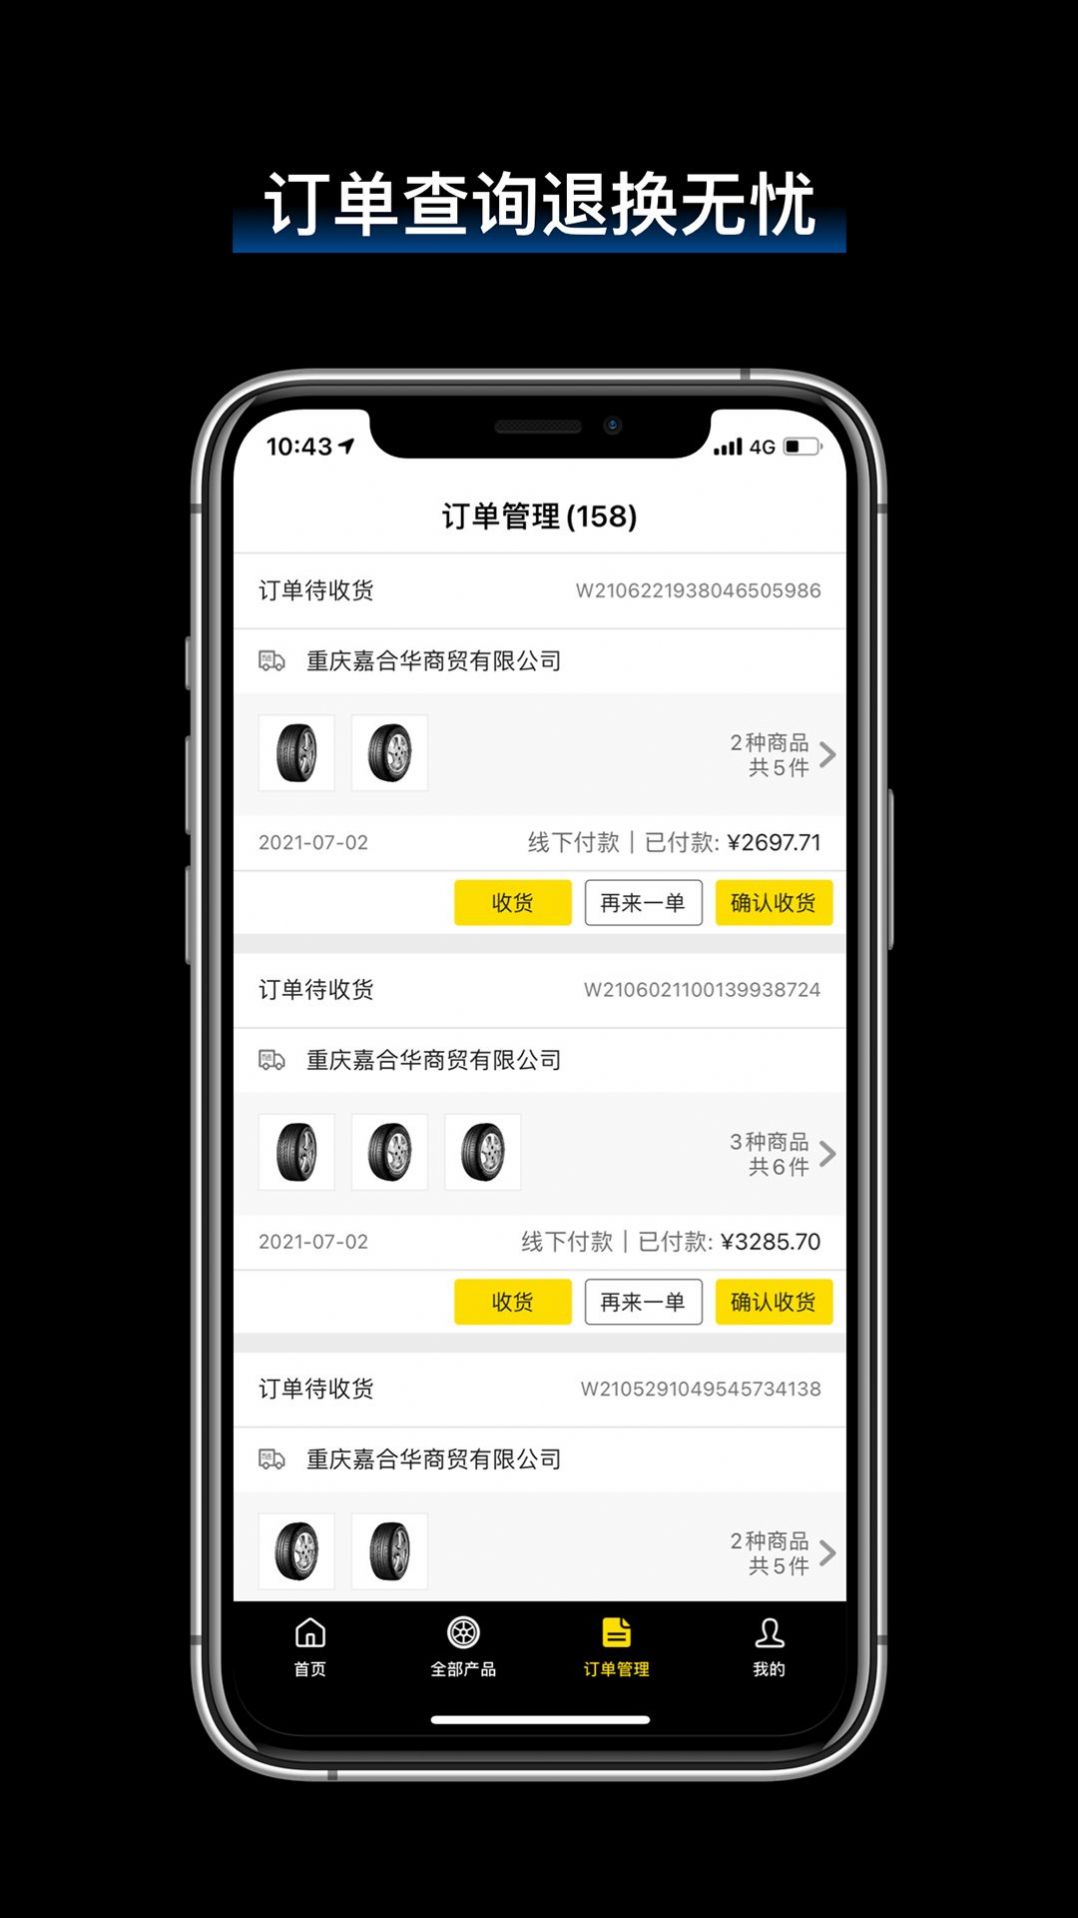 飞足e购app下载,飞足e购 固特异app下载官方版 v2.4.1